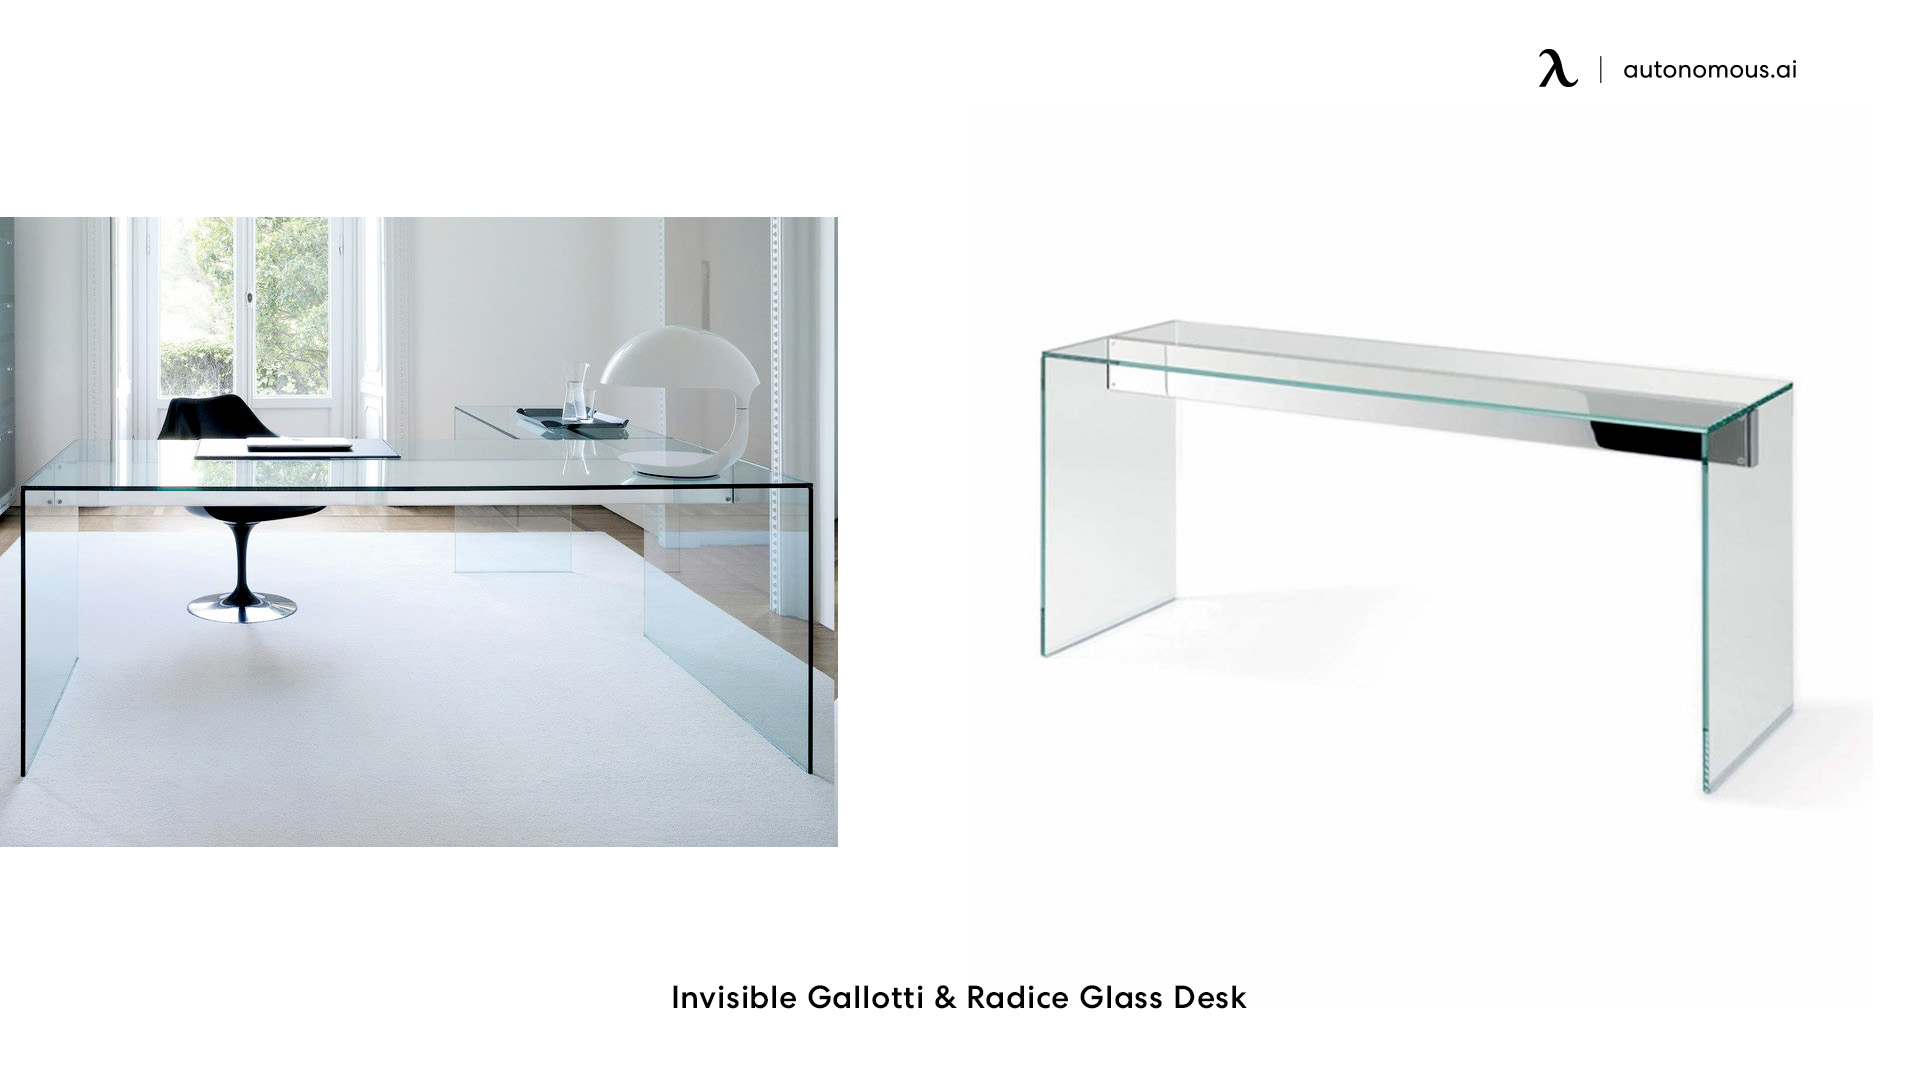 Invisible Gallotti & Radice Glass Desk